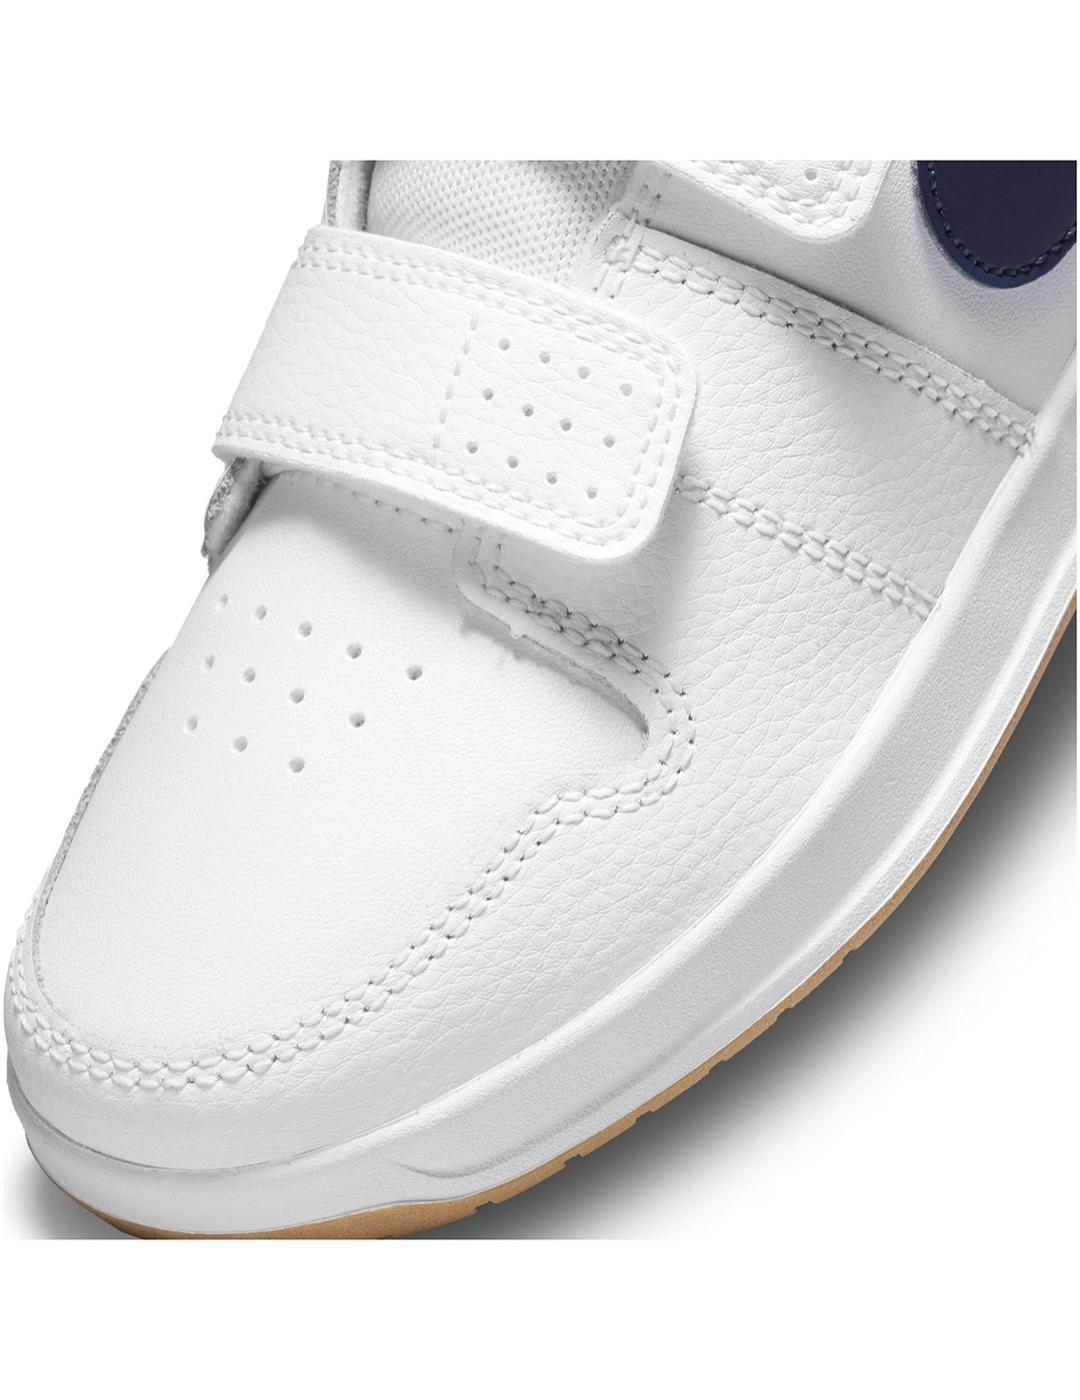 Nike Pico 5 Zapatillas Unisex niño Blanco